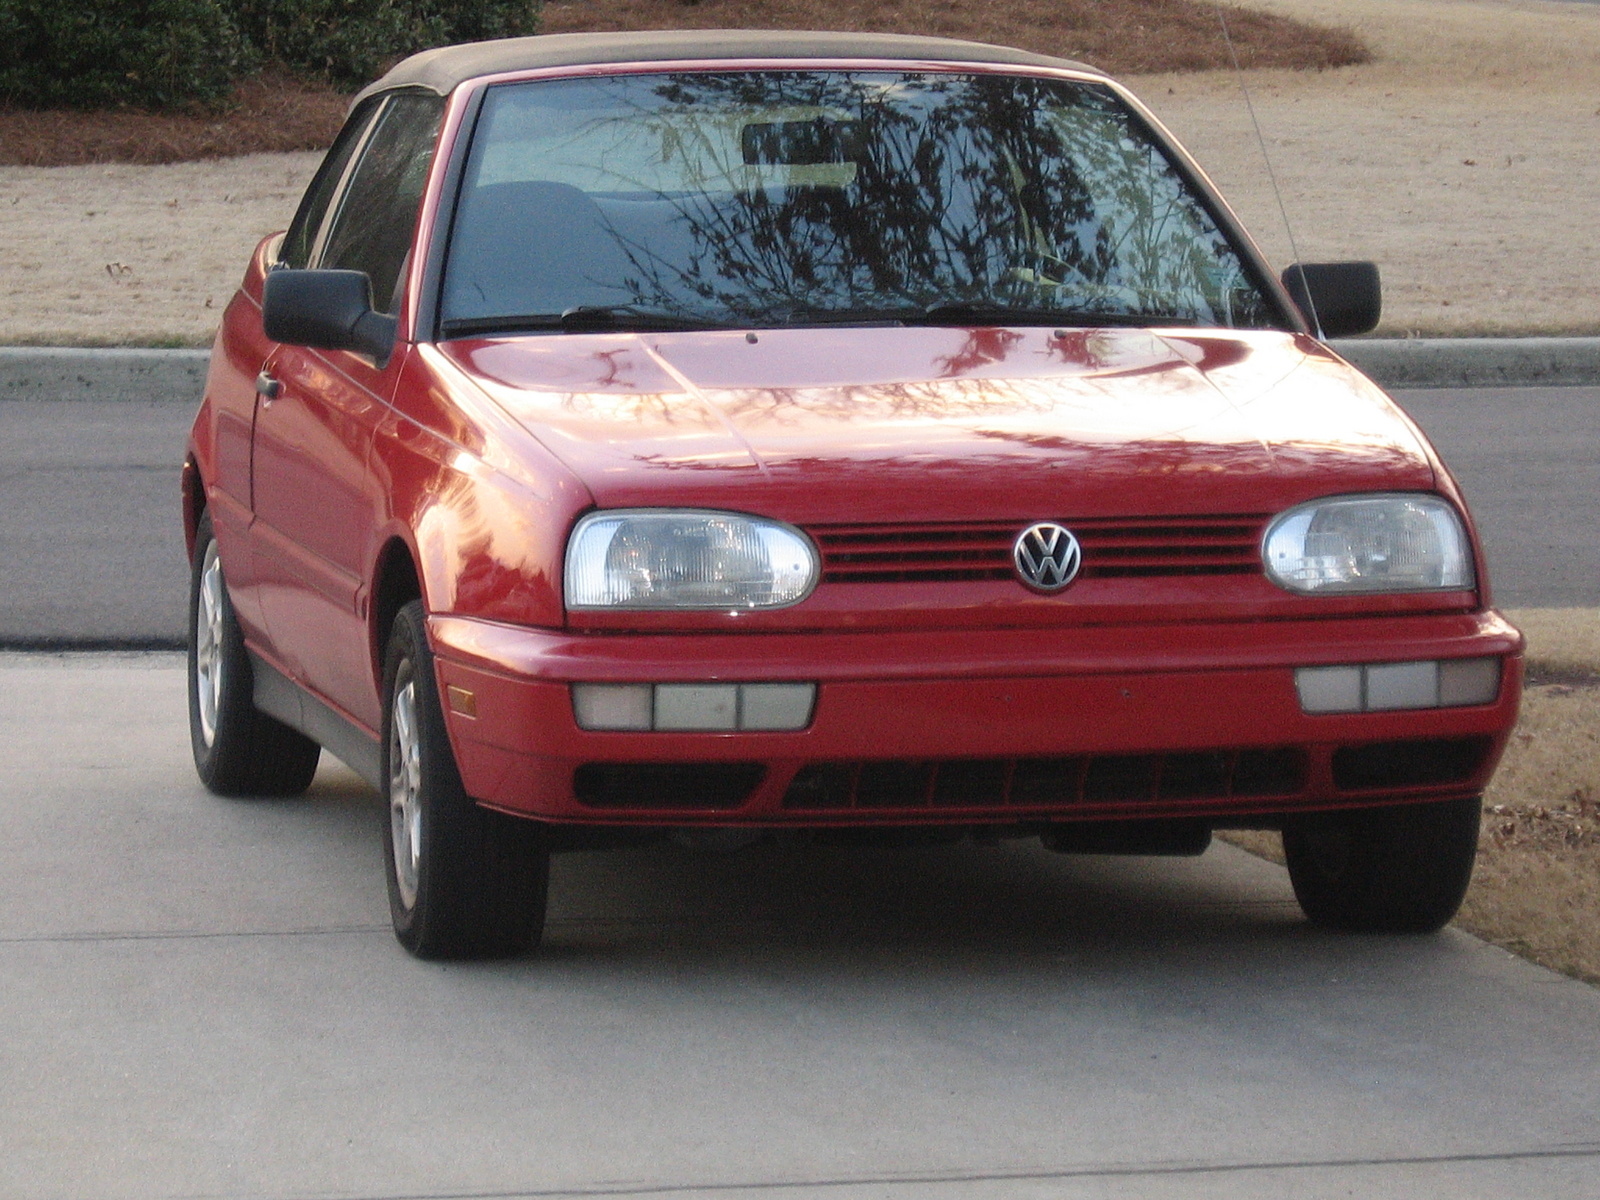 1998 Volkswagen Cabrio: Prices, Reviews & Pictures - CarGurus